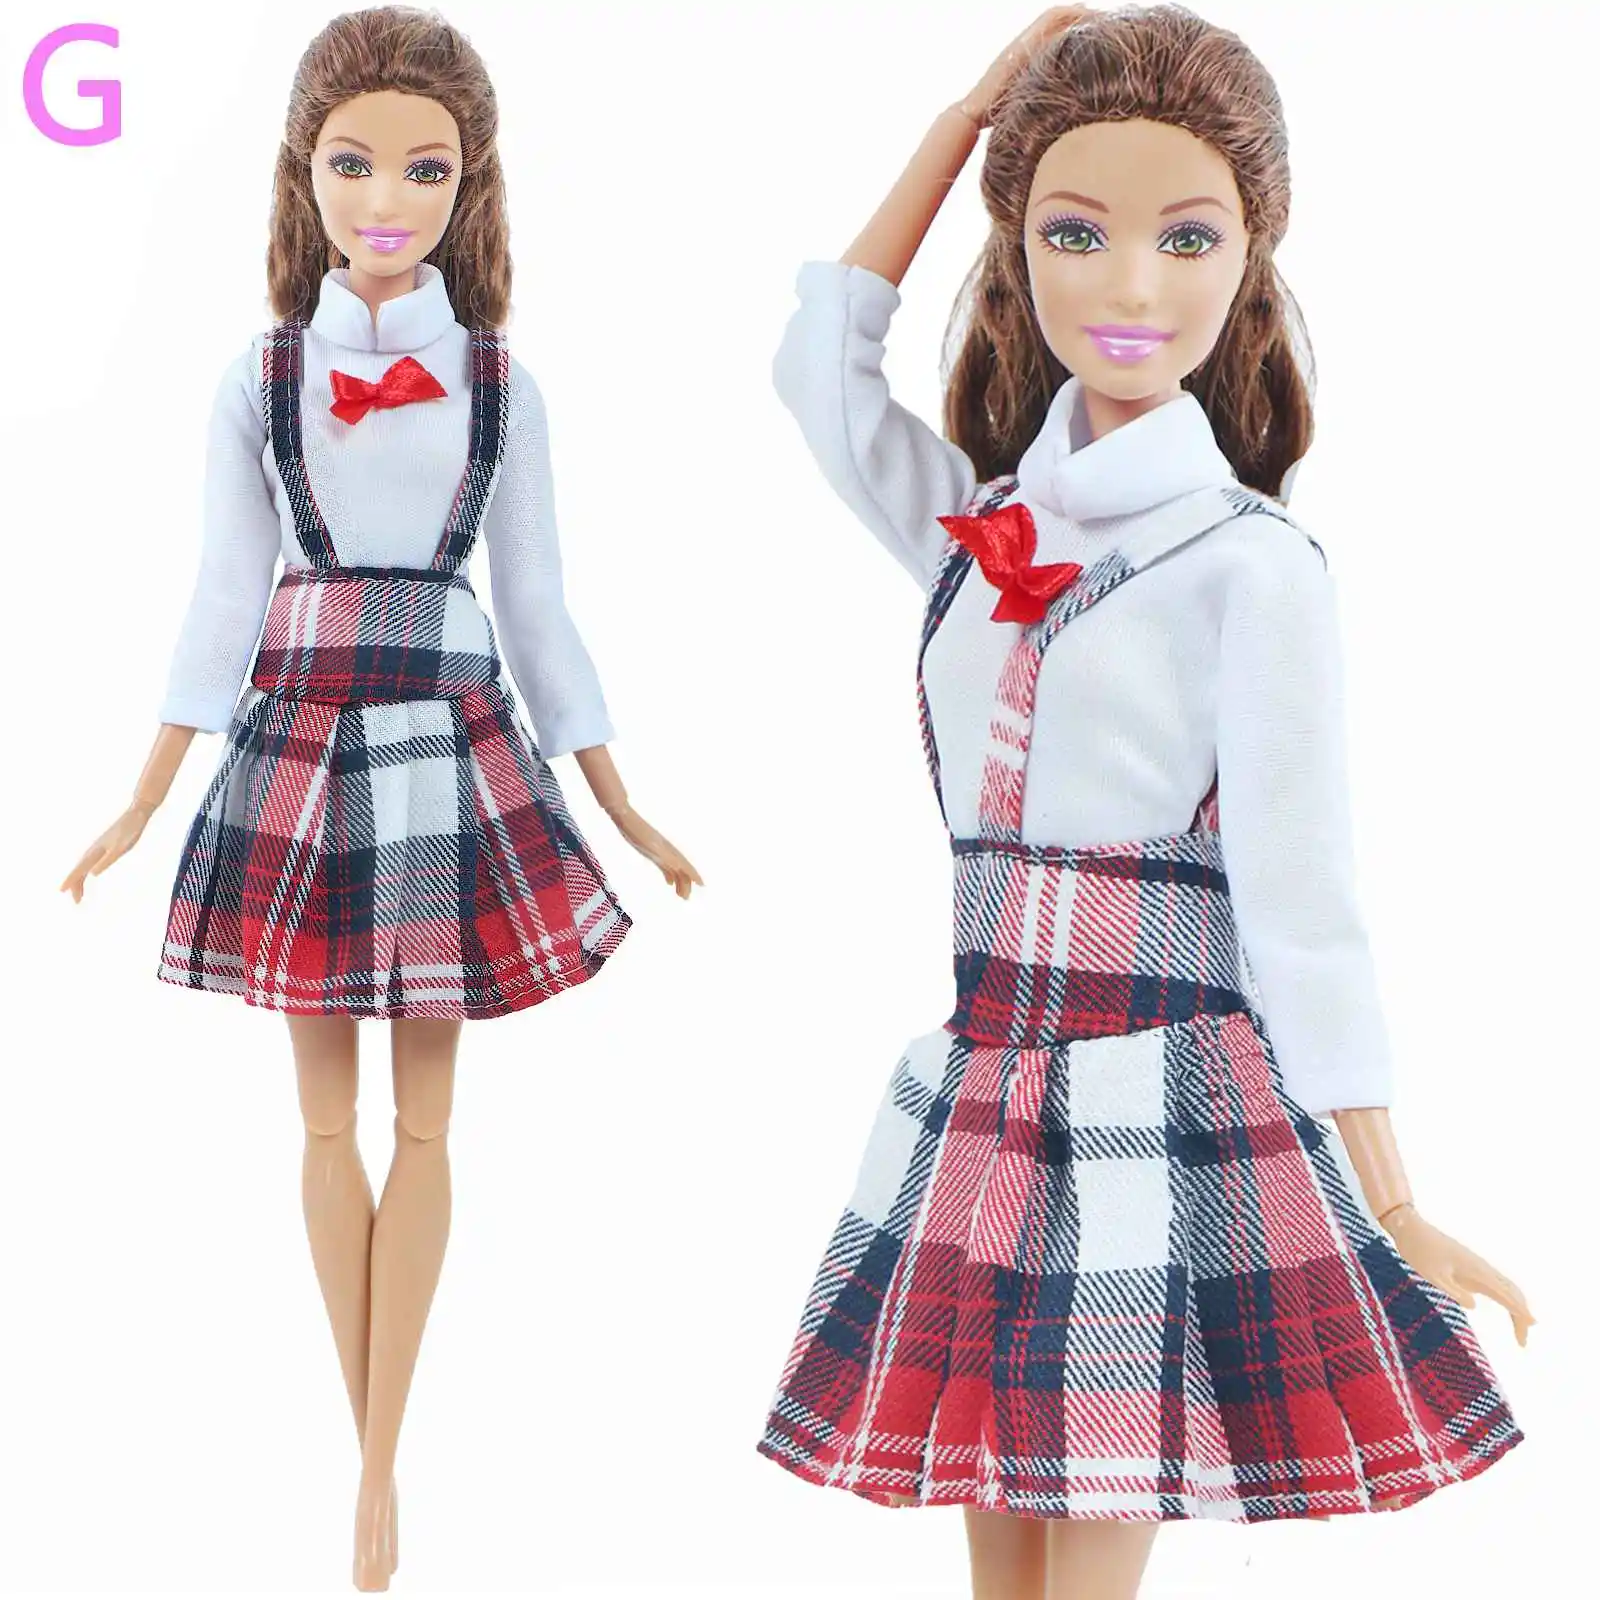 1 кукольная одежда модное платье Повседневная одежда юбка вечернее платье блузка брюки для куклы Барби аксессуары милая девочка ребенок игрушка